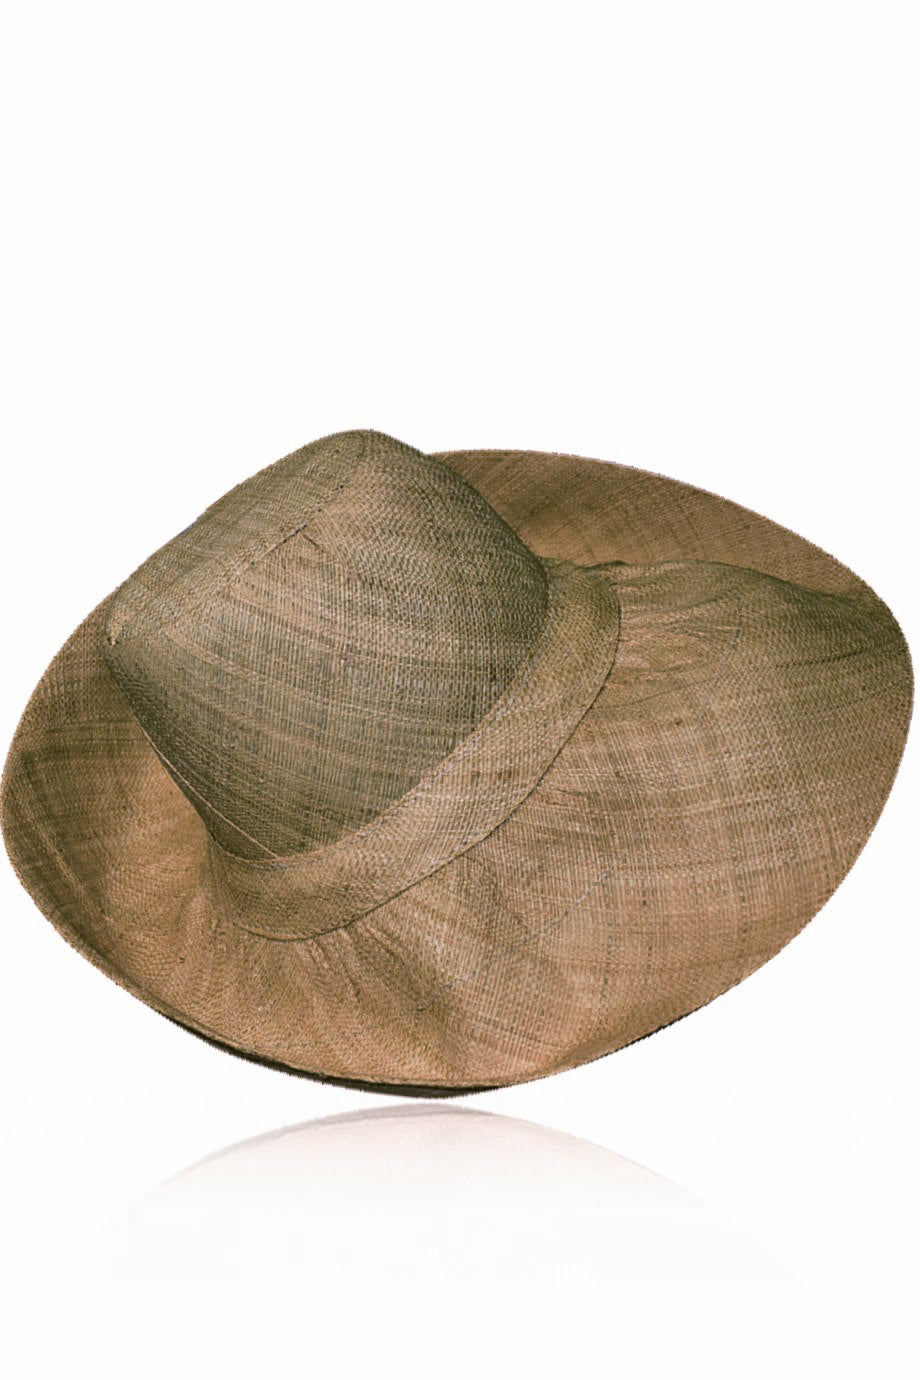 Kenzie Beige handgemaakte brede Madagascar hoed